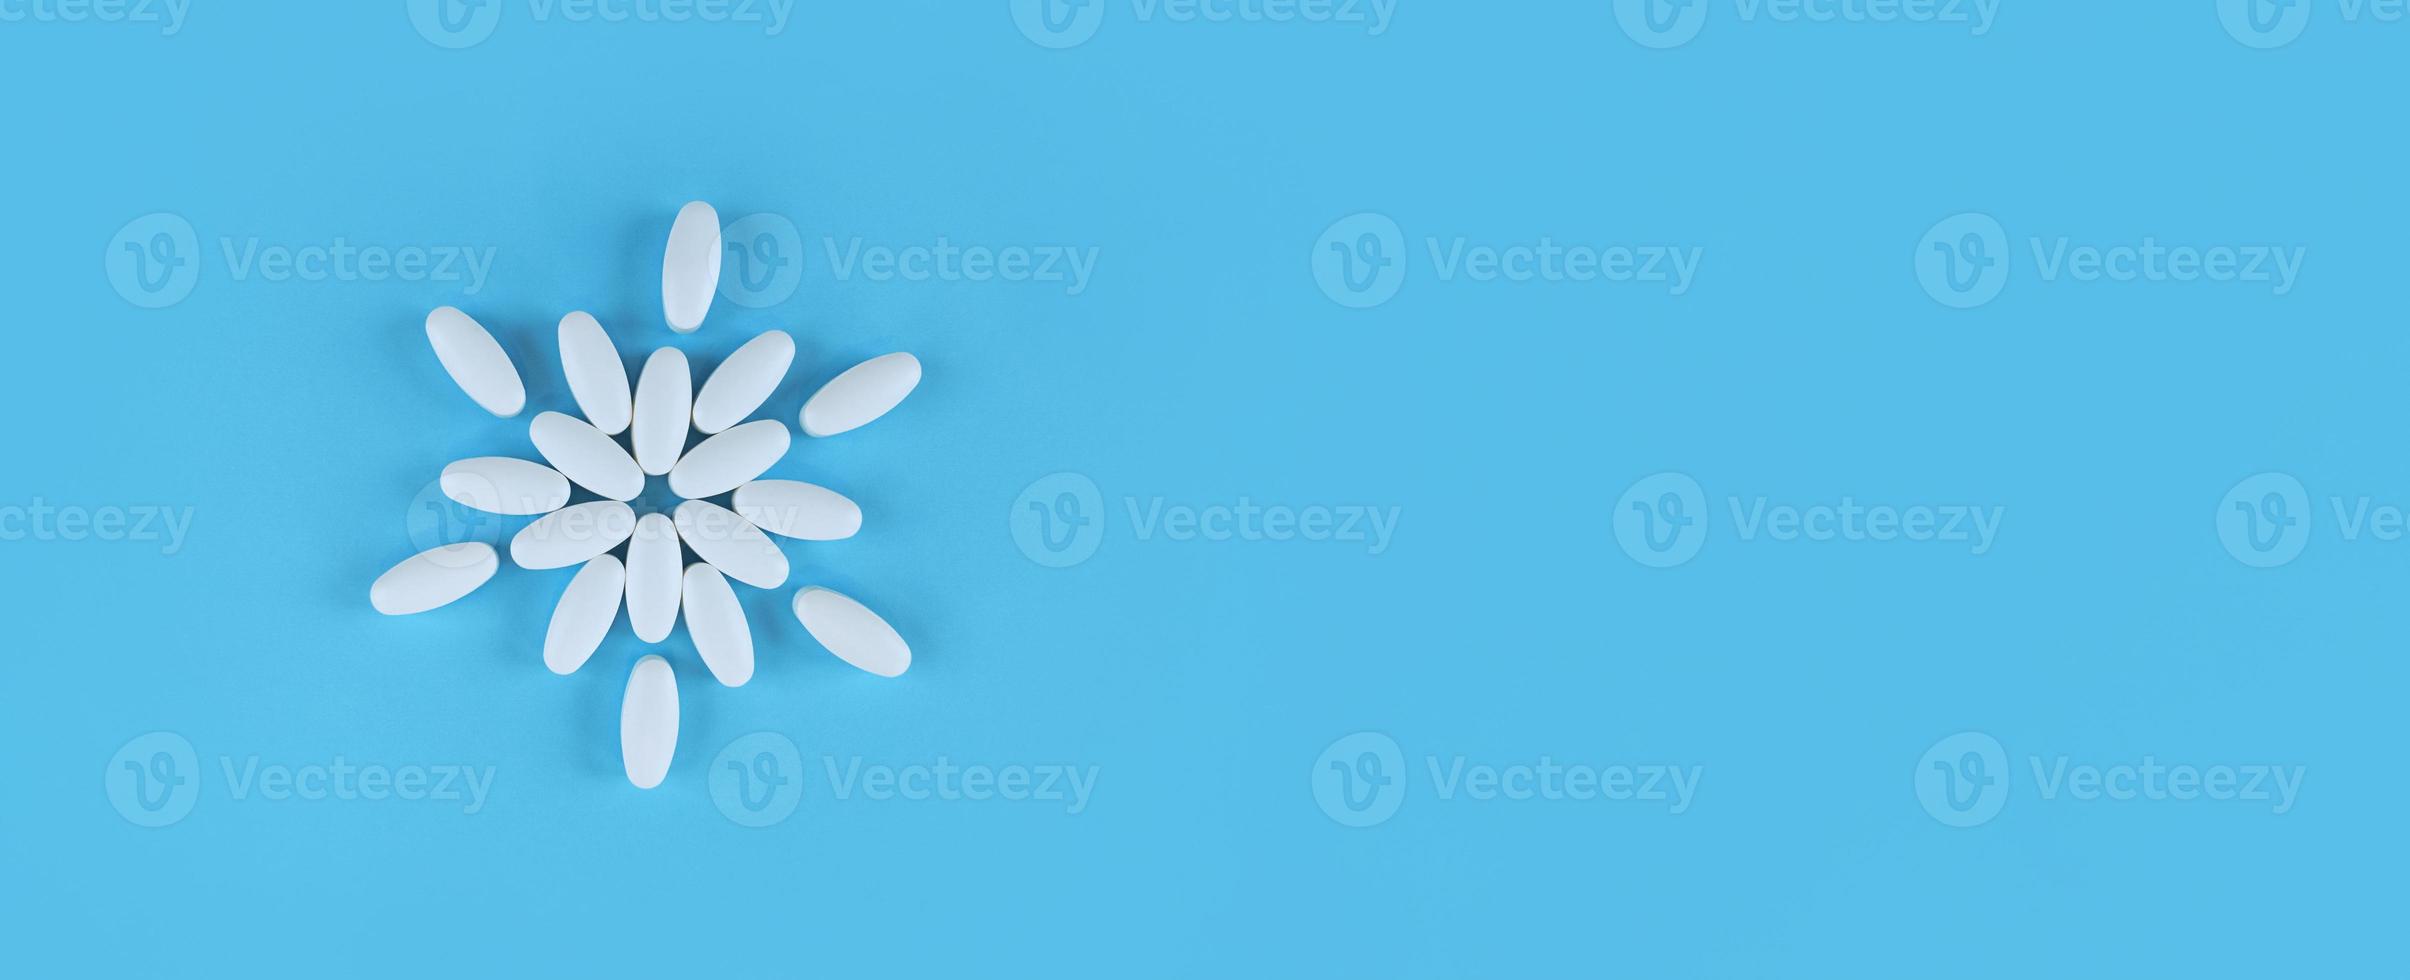 Forma de flor hecha de tabletas blancas sobre fondo azul con espacio de copia foto